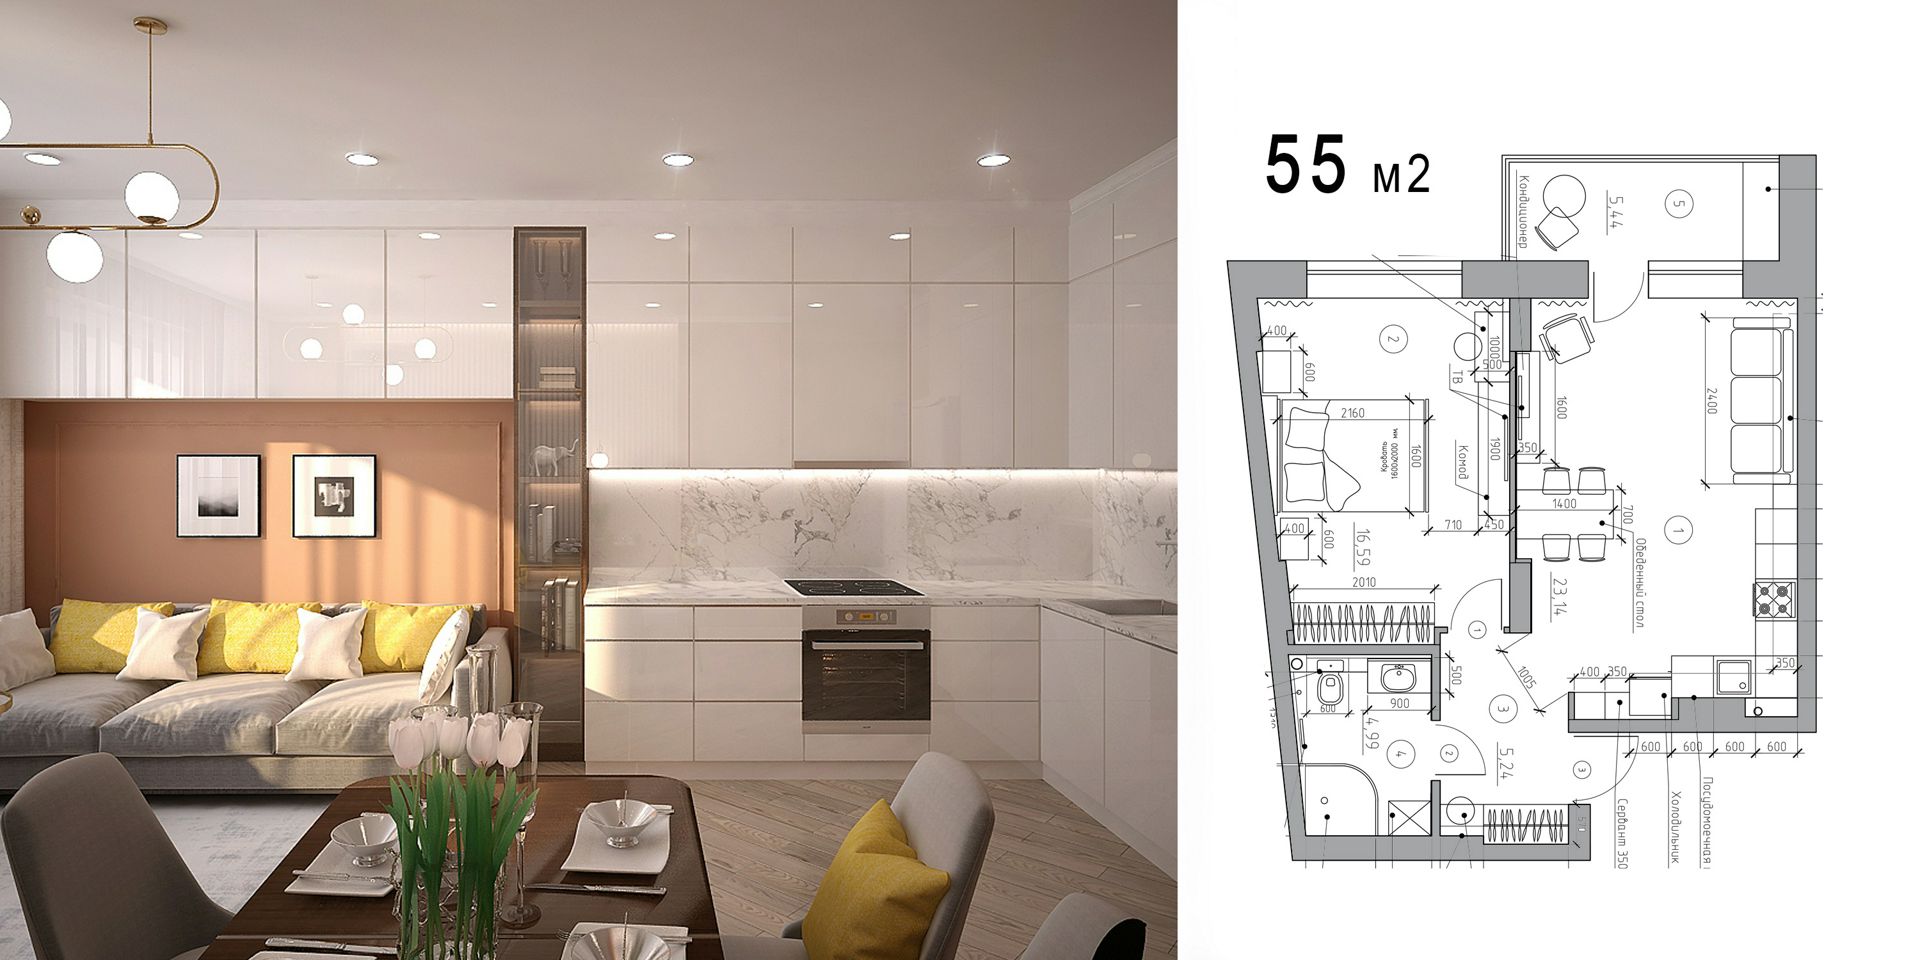 Дизайн проект интерьера типовой квартиры 55м2 евродвушка с чертежами и товарной ведомостью